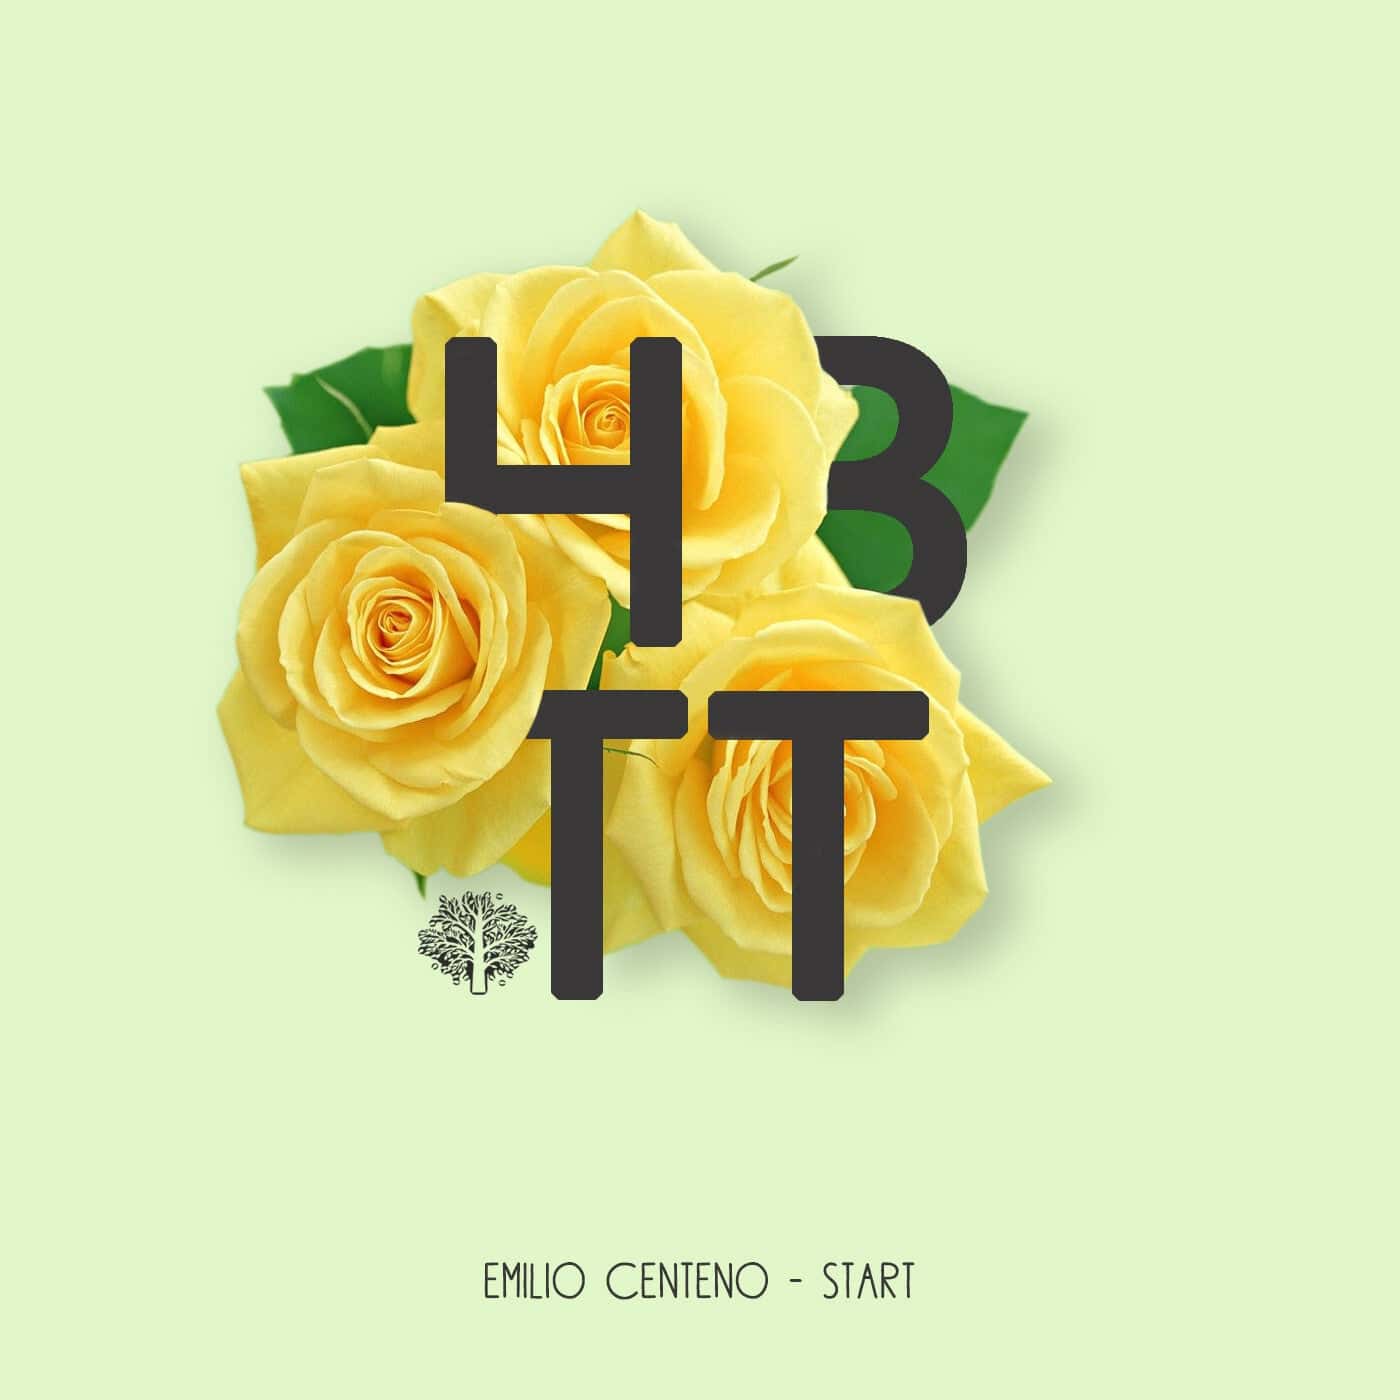 Download Emilio Centeno - Start on Electrobuzz